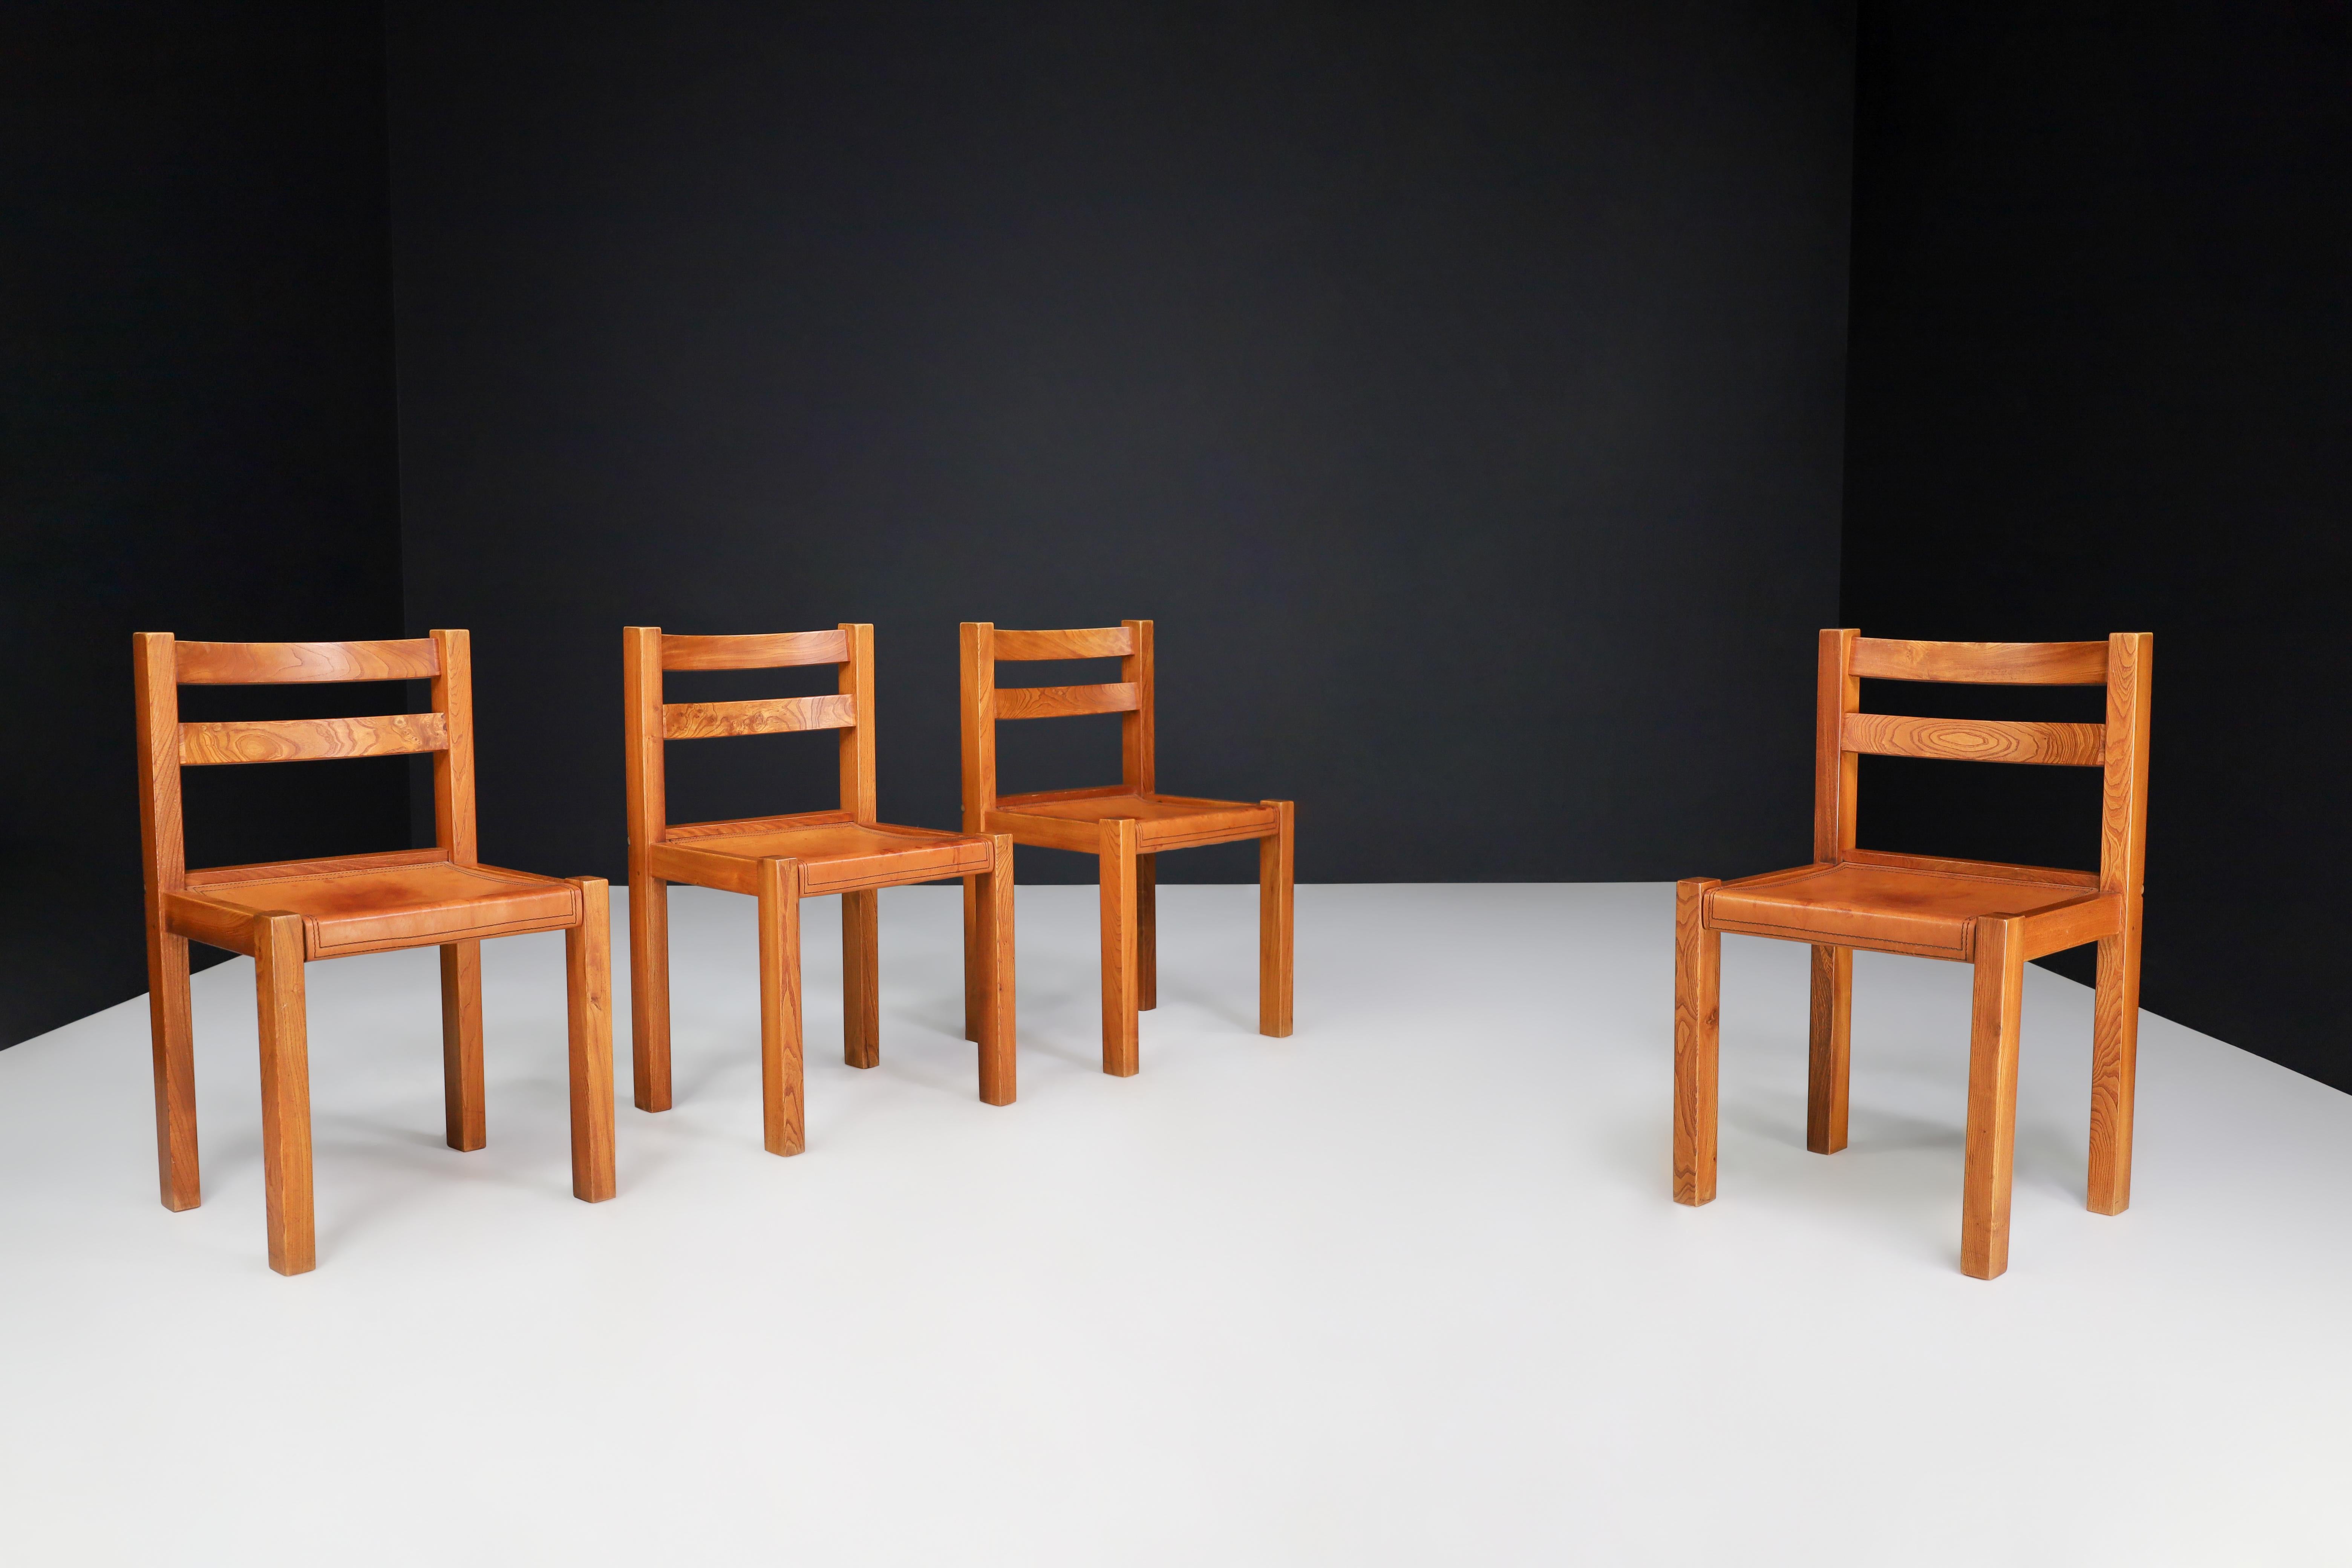 Chaises de salle à manger en orme et cuir cognac, ensemble de 4, Italie, années 1950

Cet ensemble de quatre chaises de salle à manger a été fabriqué en Italie dans les années 1950 et est fait de bois d'orme et de cuir de couleur cognac. Les chaises